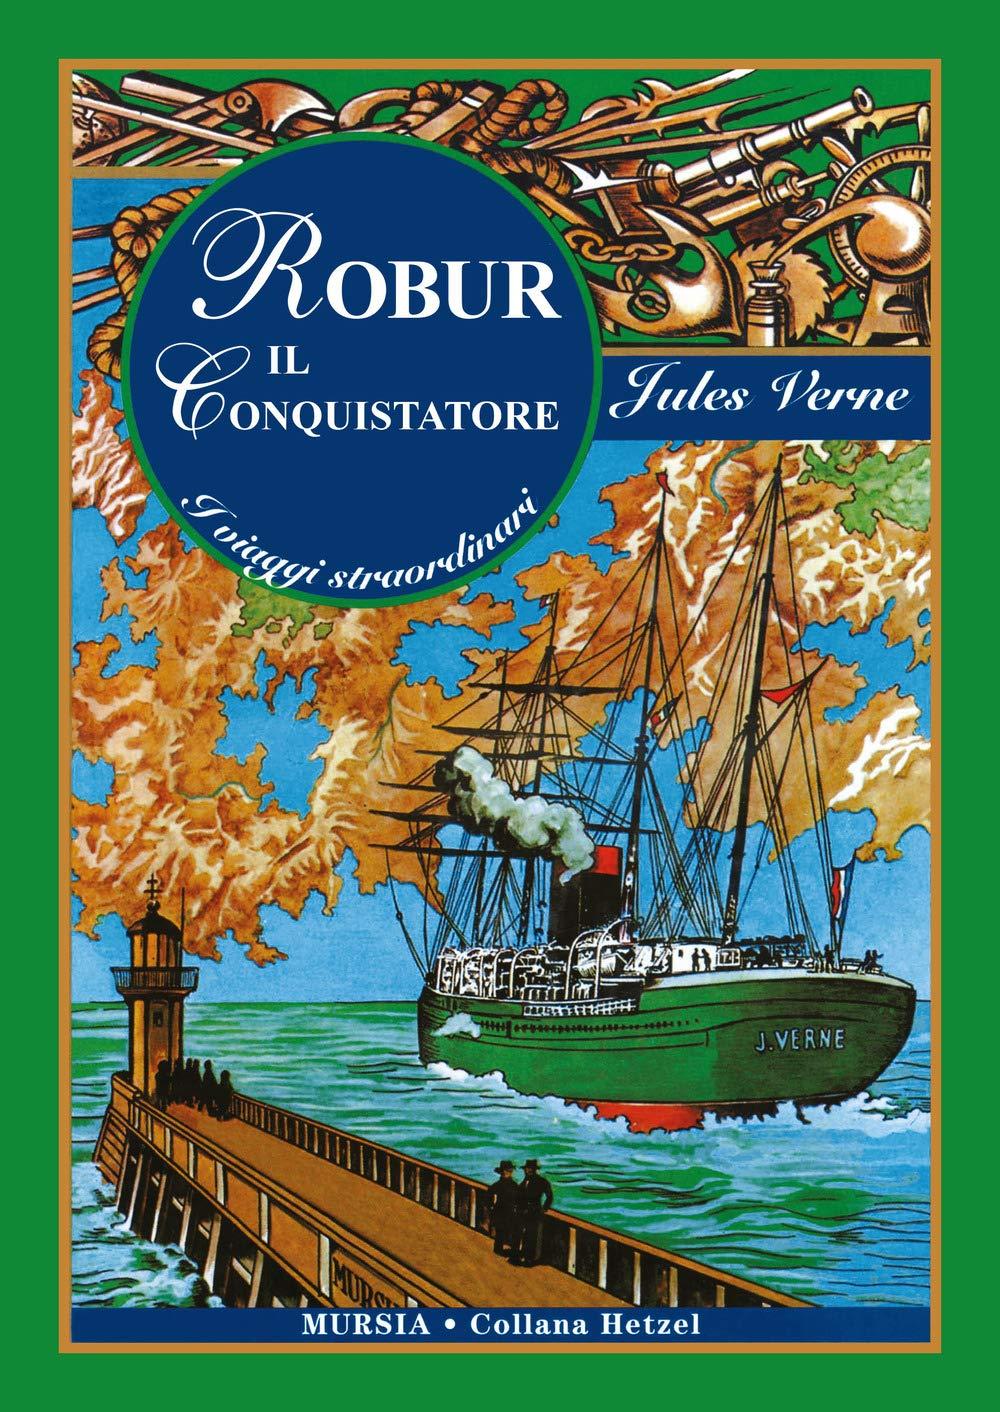 Libro "Robur il conquistatore" di Jules Verne